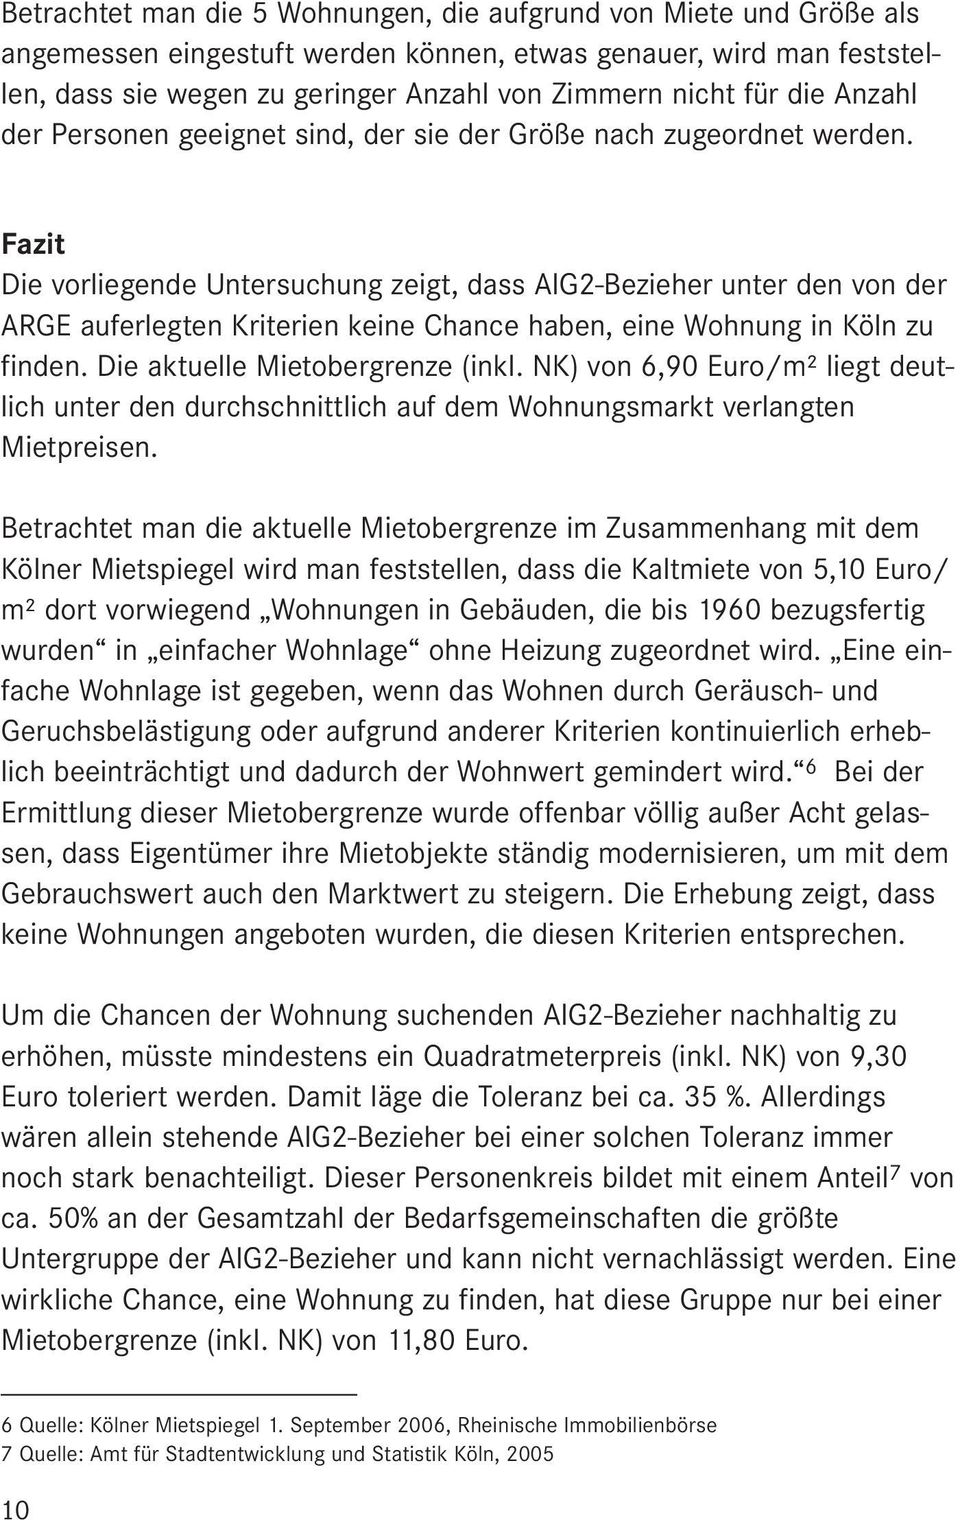 Fazit Die vorliegende Untersuchung zeigt, dass AlG2-Bezieher unter den von der ARGE auferlegten Kriterien keine Chance haben, eine Wohnung in Köln zu finden. Die aktuelle Mietobergrenze (inkl.